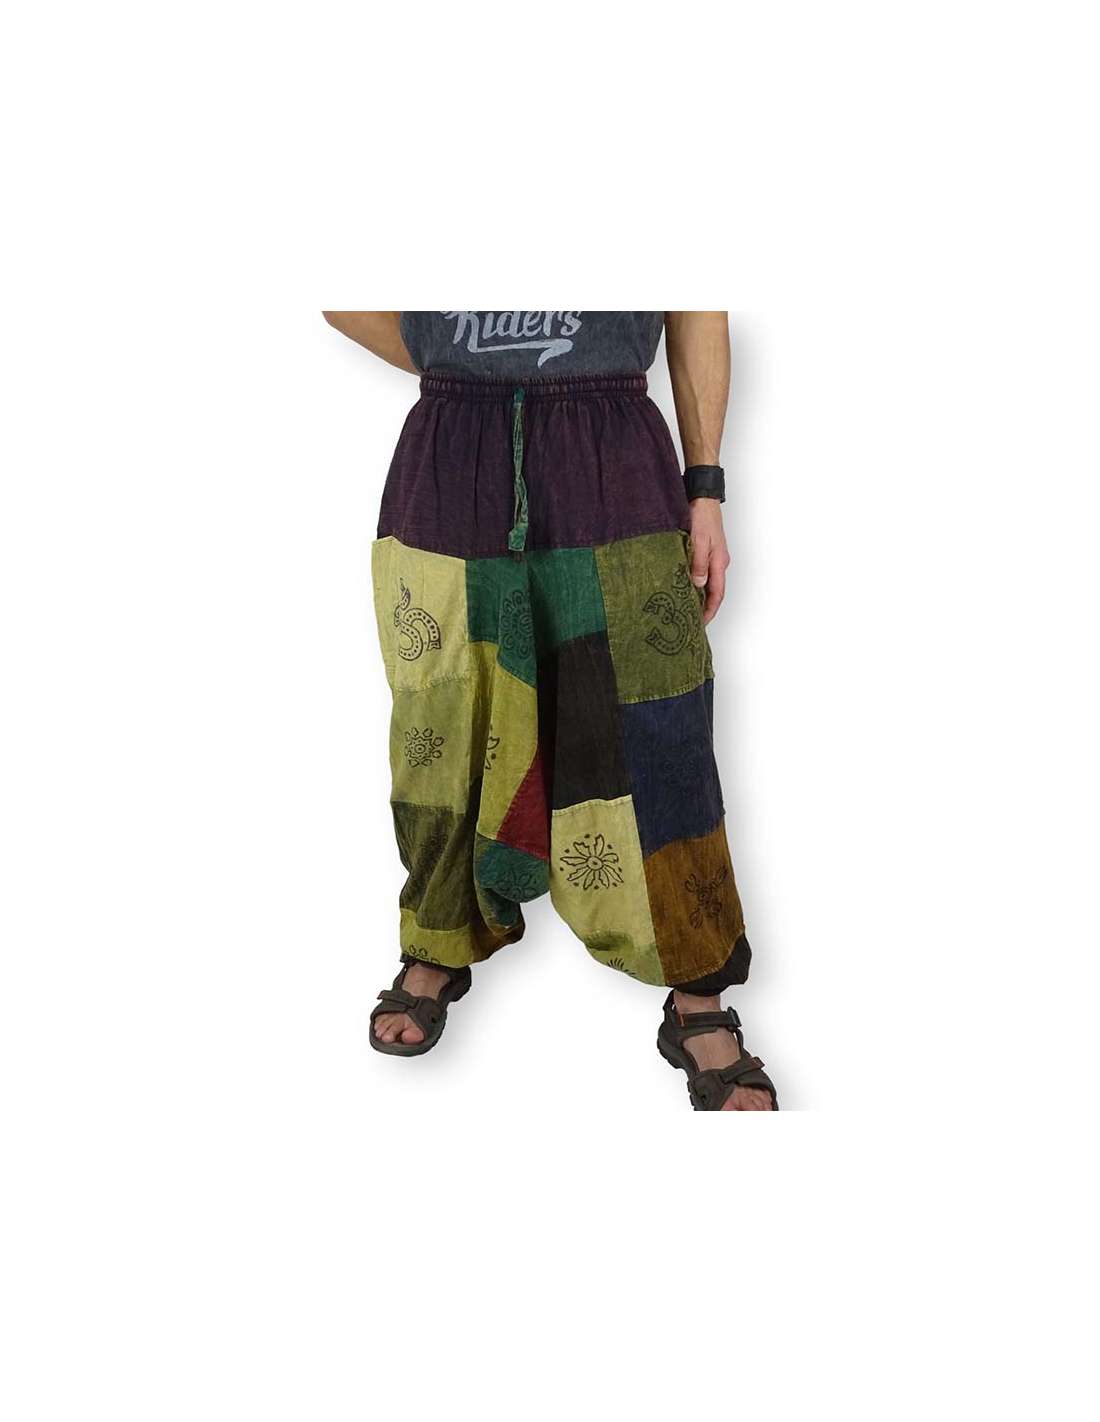 ➤ Comprar Pantalón Bombacho Hippie Patchwork. Tienda online!!